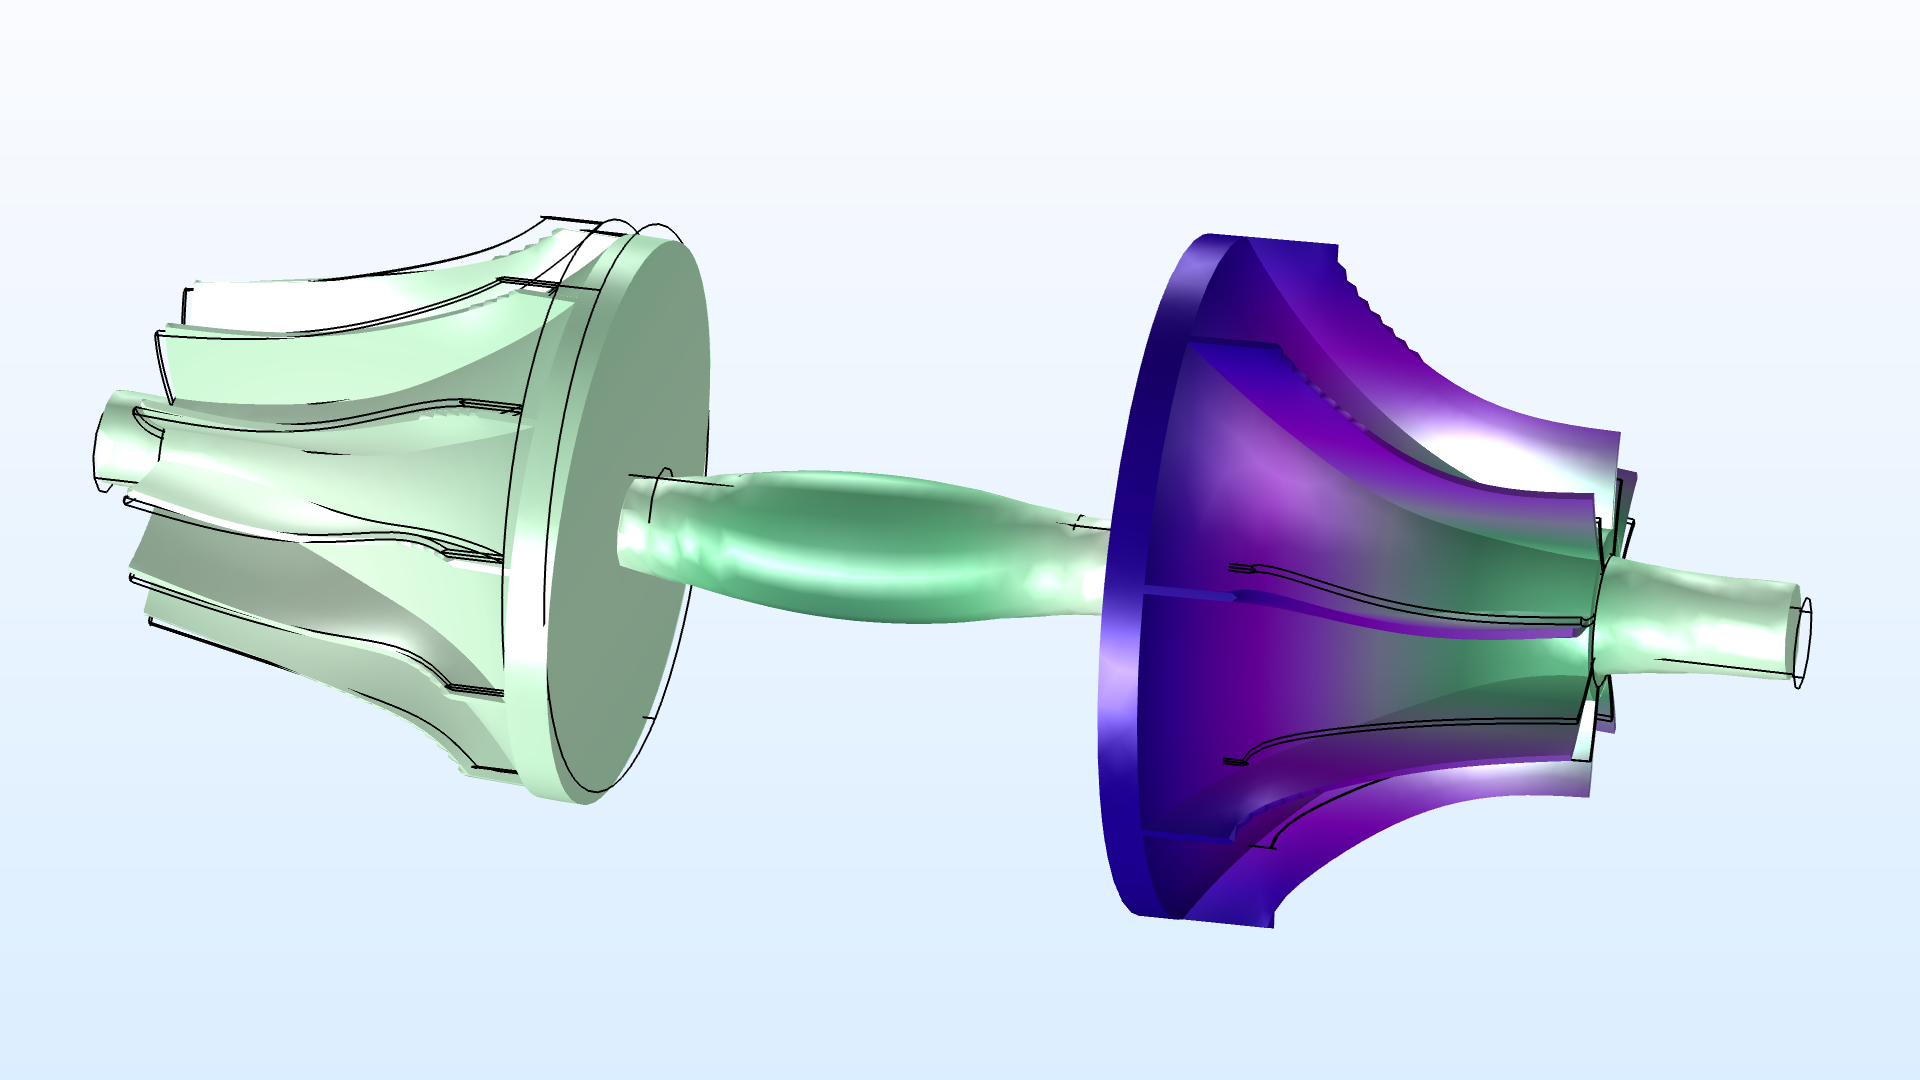 旋转动力学模块具有新的涡轮增压器模型，其中包括交叉耦合轴承力。